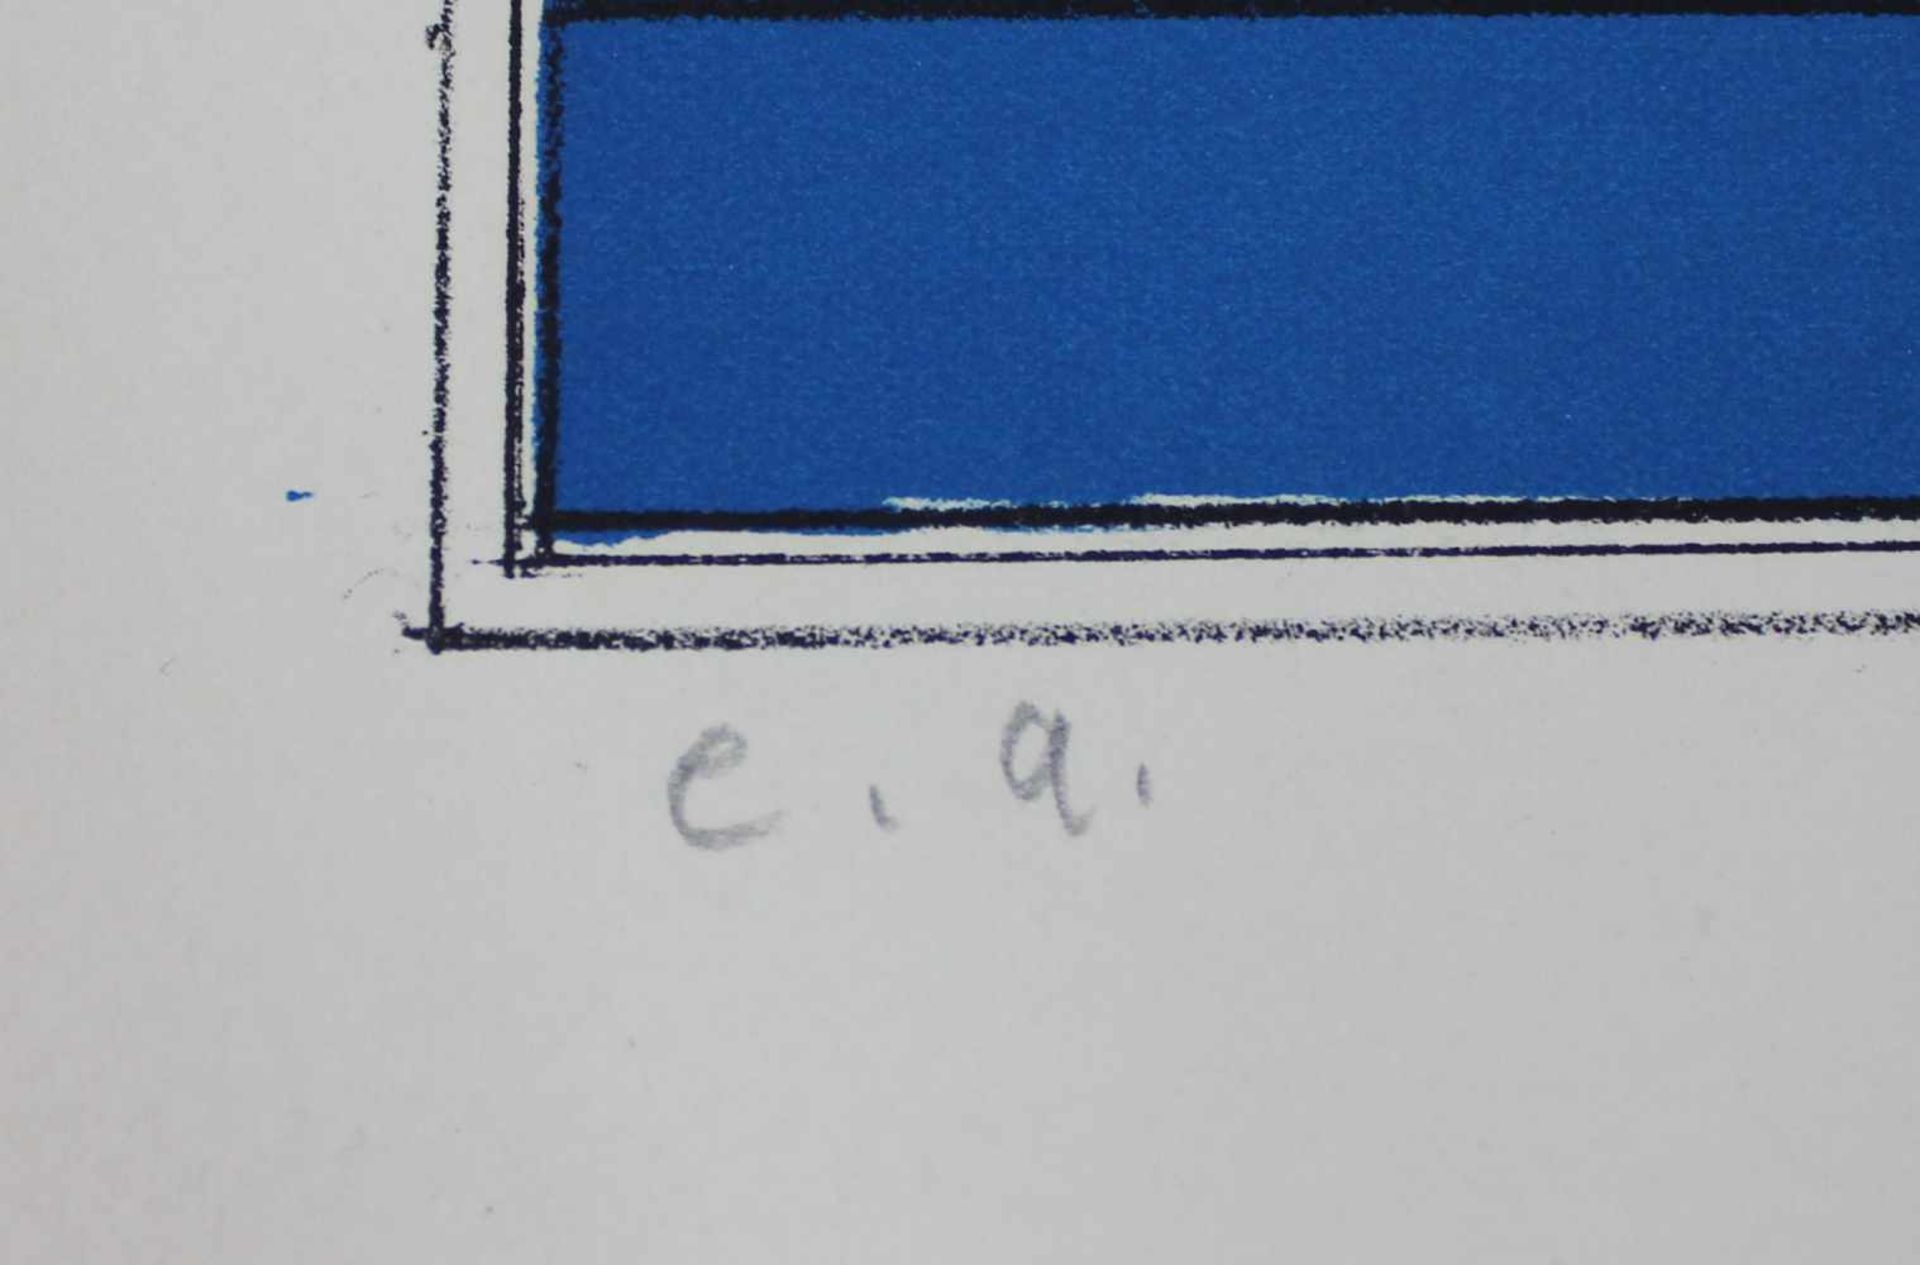 Paul WUNDERLICH (1927 - 2010). "Der Blaue Engel" (The Blue Angel)432 mm x 550 mm die Abbildung. - Image 4 of 6